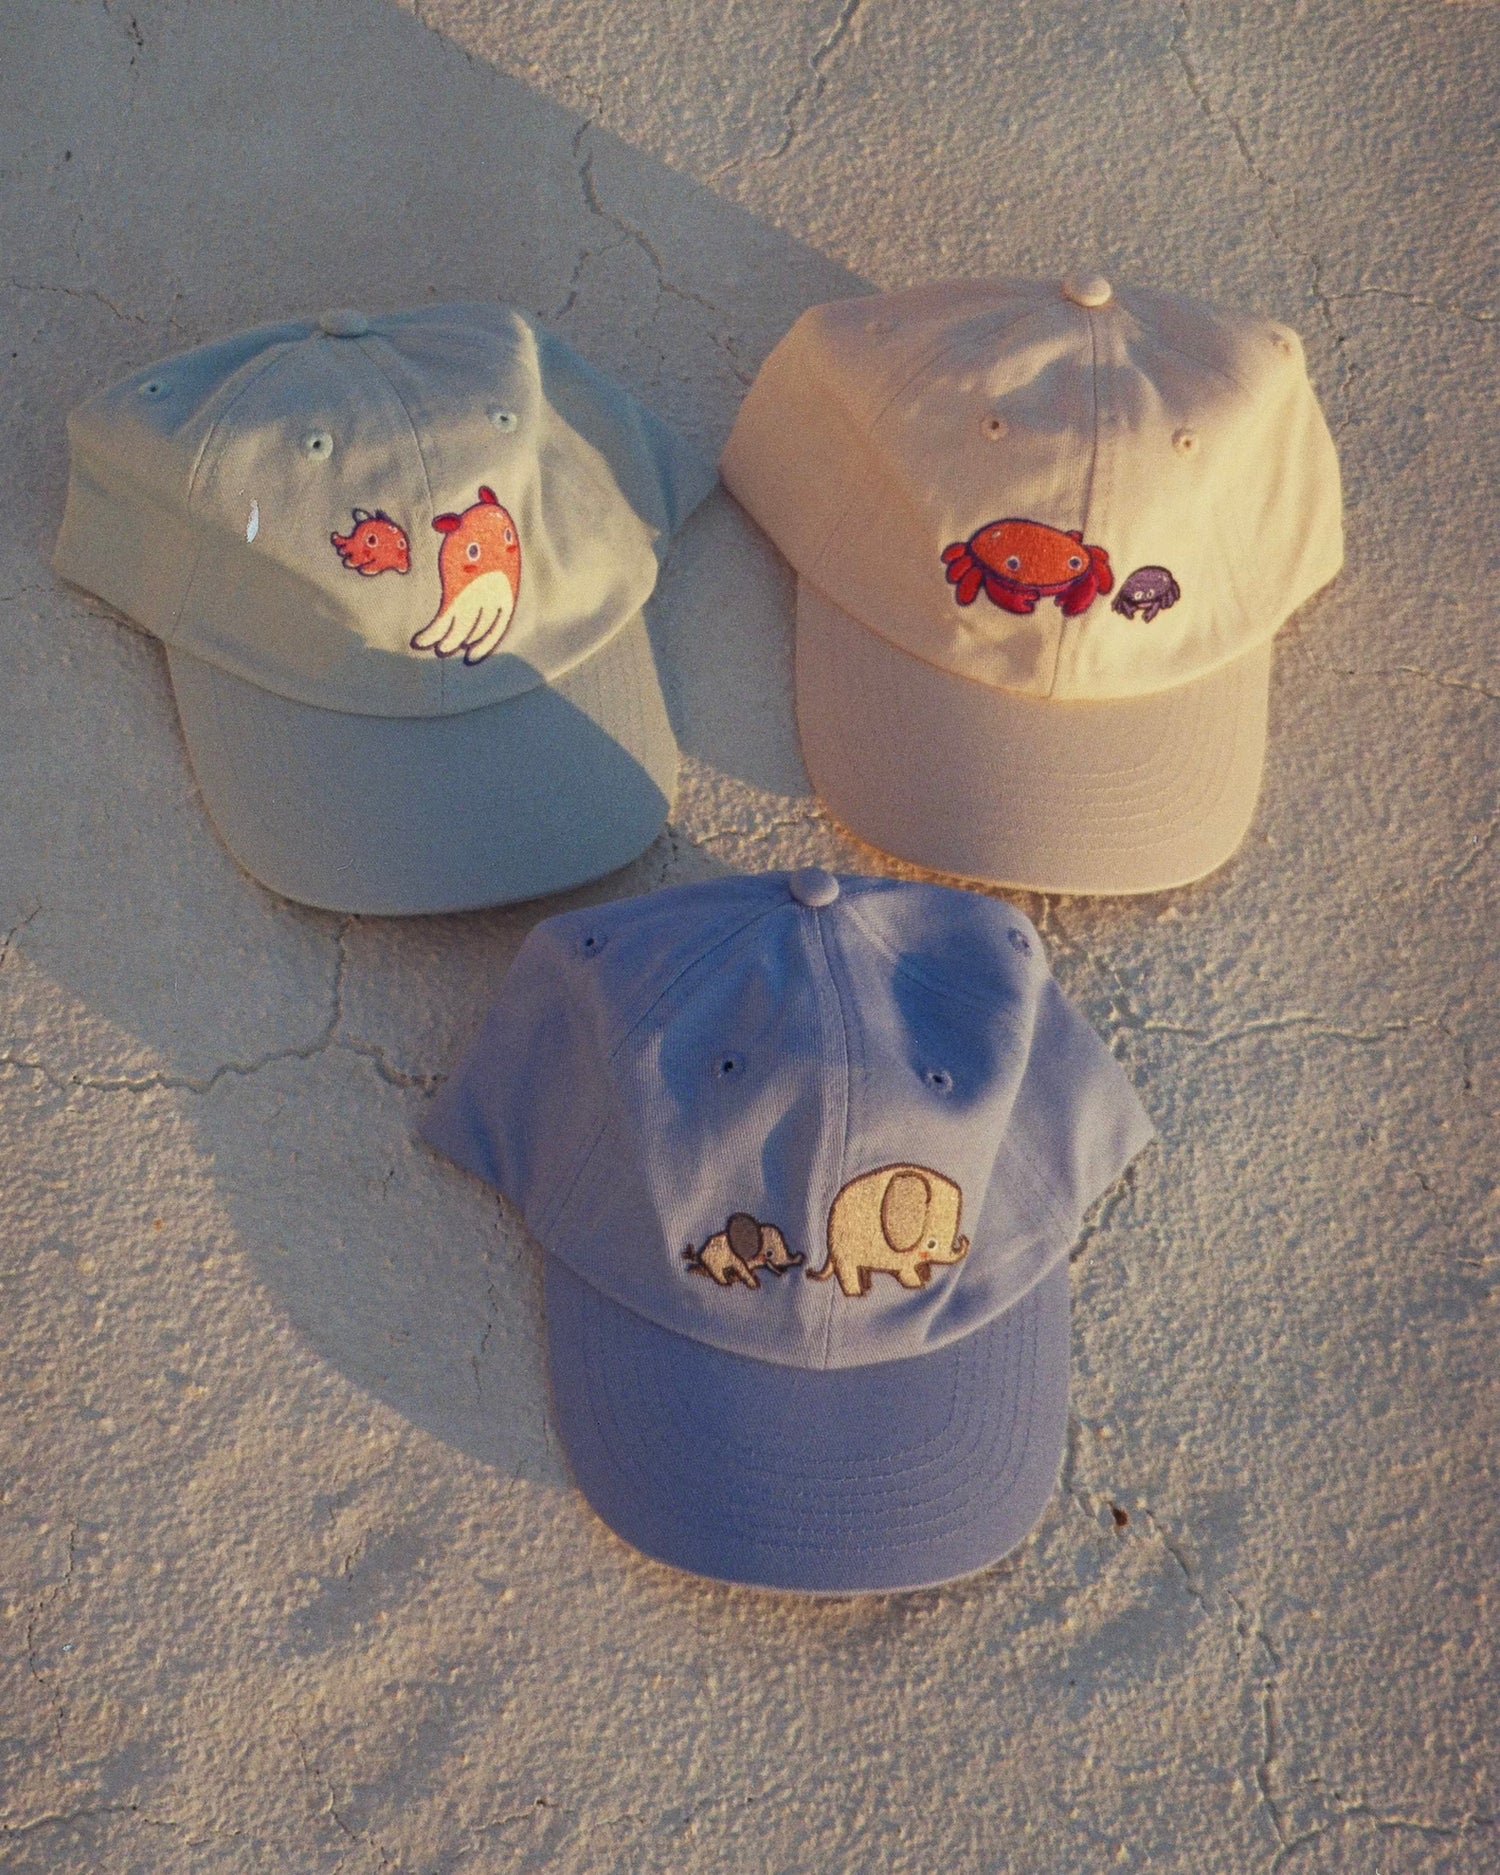 Drei Caps / Mützen für Kinder in hellblaues Cap mit einem rosa Tintenfisch, ein beiges Cap mit zwei Krabben und ein hellblaues Cap mit zwei Elefanten